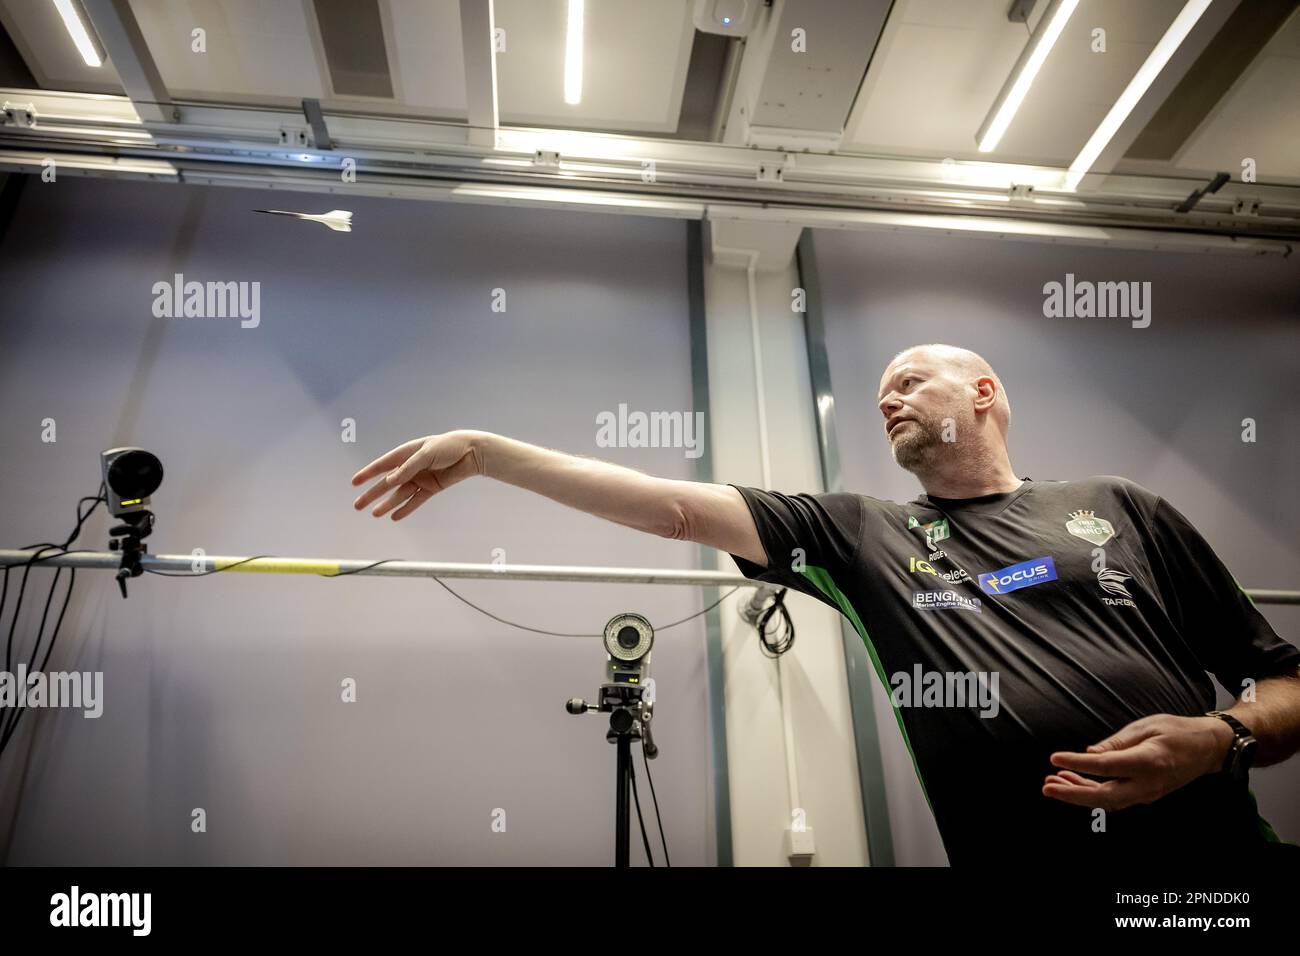 DELFT - Raymond van Barneveld lors d'un test d'un nouveau dart développé par des chercheurs de tu Delft. Selon les chercheurs, il s'agit d'une dart qui est presque 50 pour cent plus précise qu'une dart classique. ANP ROBIN VAN LONKHUIJSEN pays-bas sortie - belgique sortie Banque D'Images